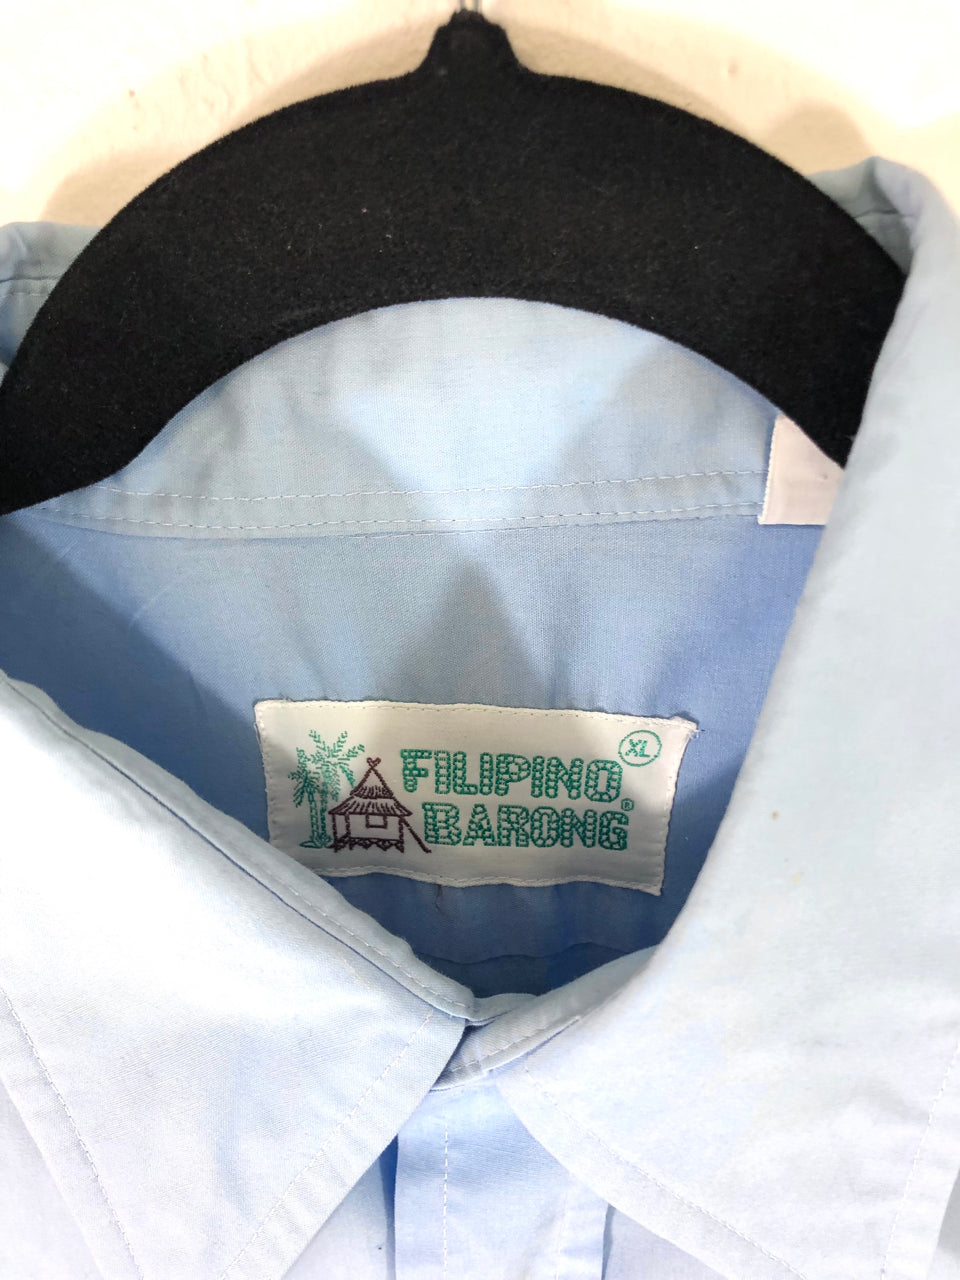 Filipino Barong Embroidered Shirt